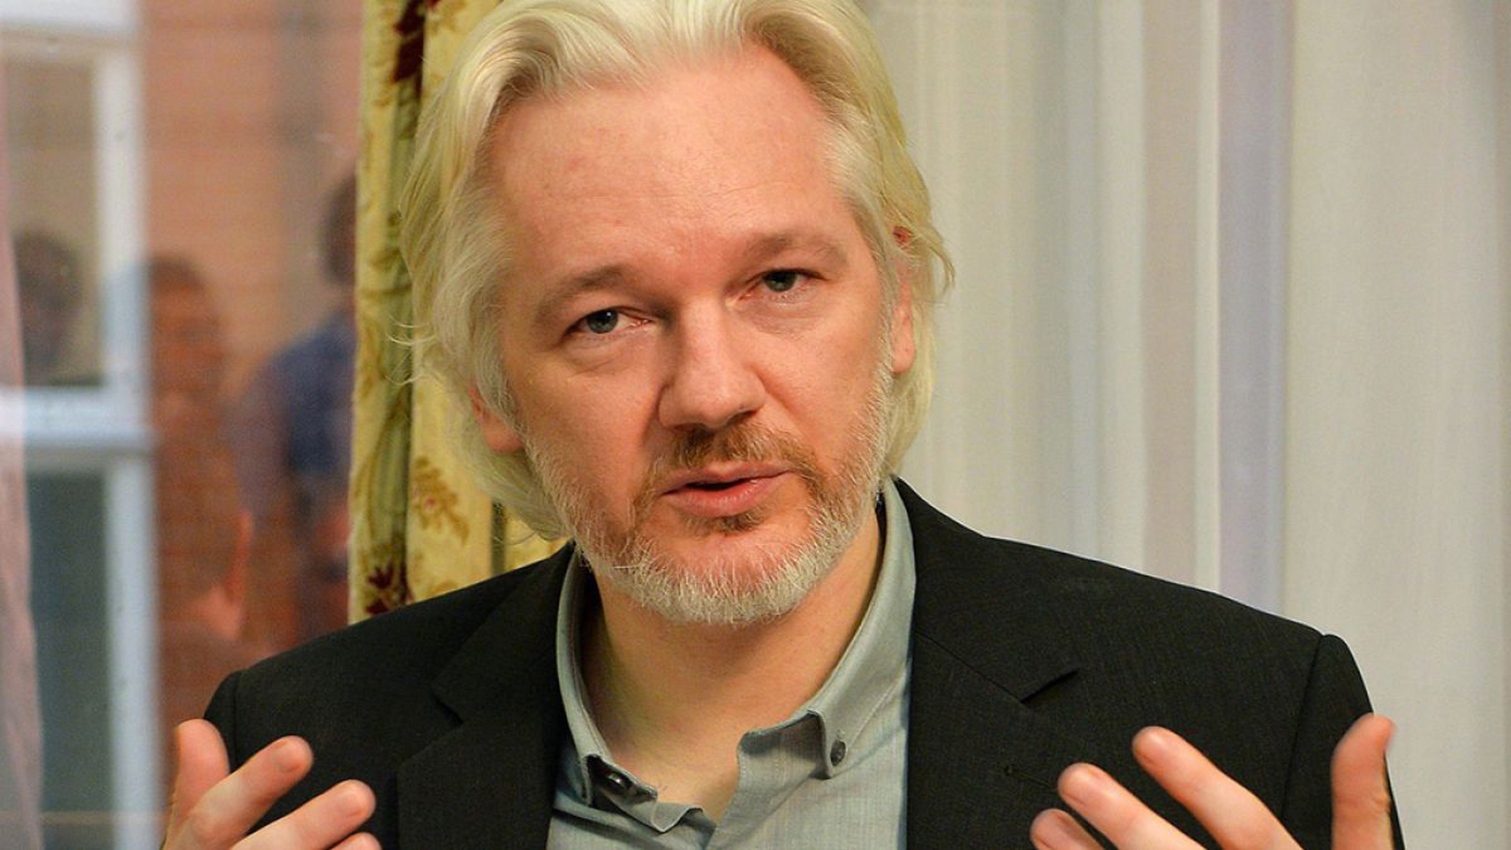 Suecia se pronunciará sobre la eventual detención de Assange